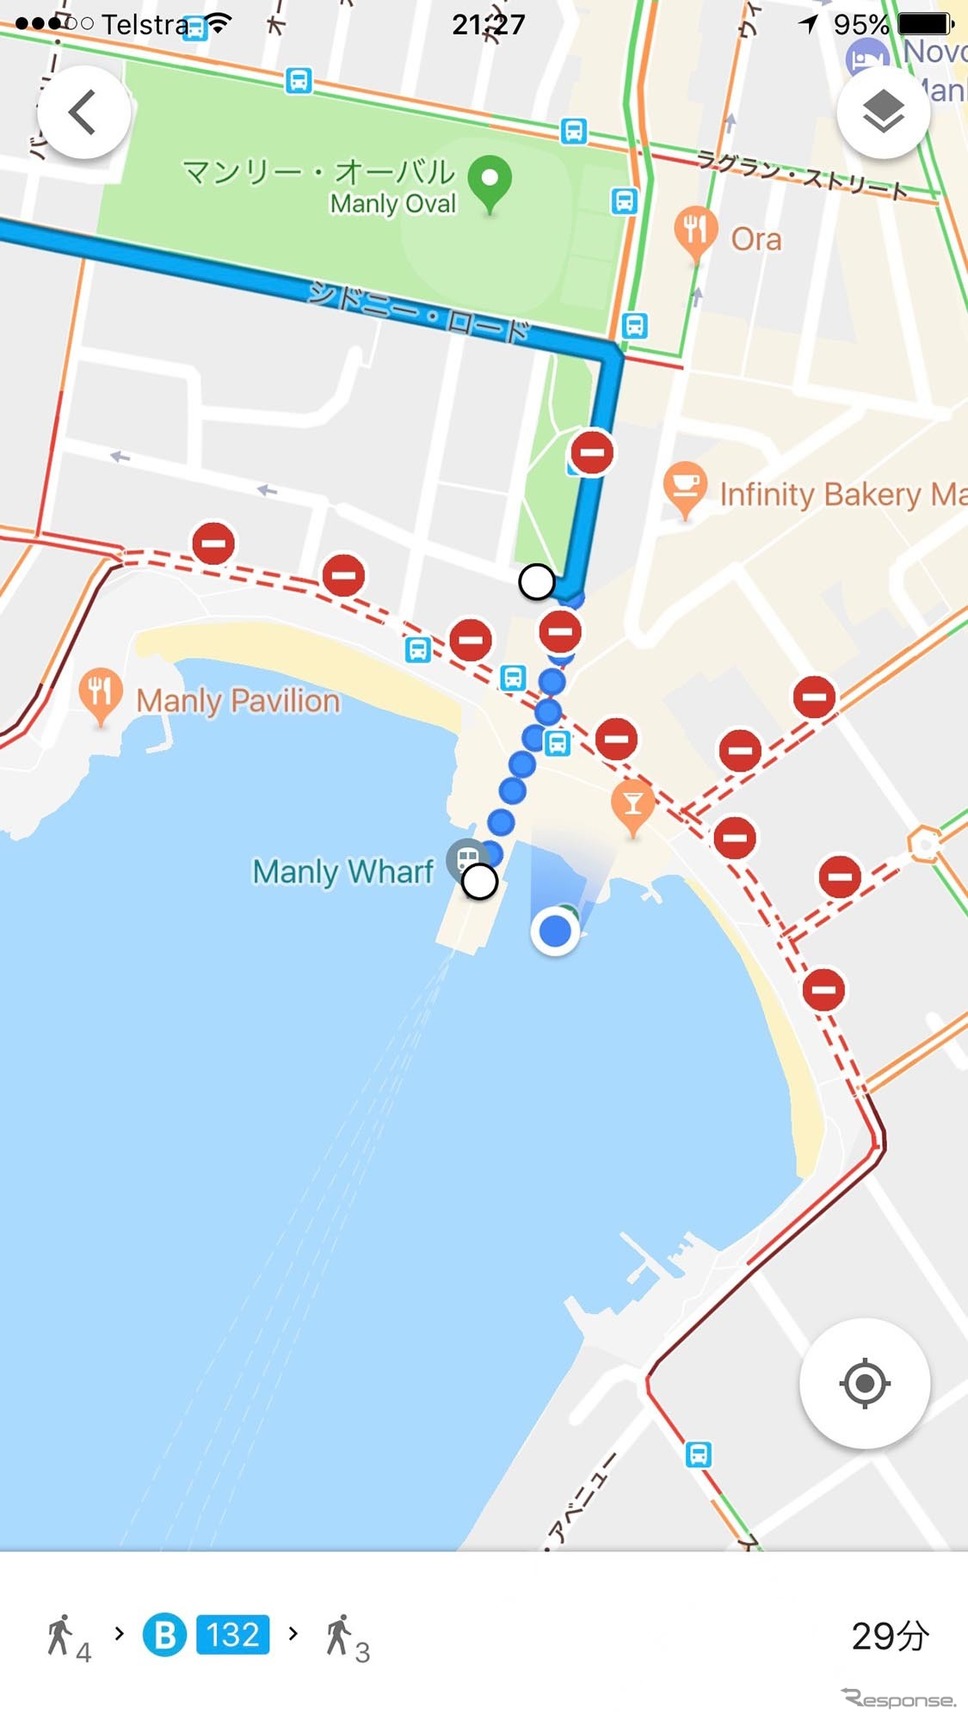 大晦日のGoogleMap。通行止めと、乗りたいバスの路線図を表示。実線がバスのルート（点線はいまいる場所からバス停までの徒歩ルート）。バス停は、いつもより100メートルほど北側に移動している。《撮影 岩貞るみこ》